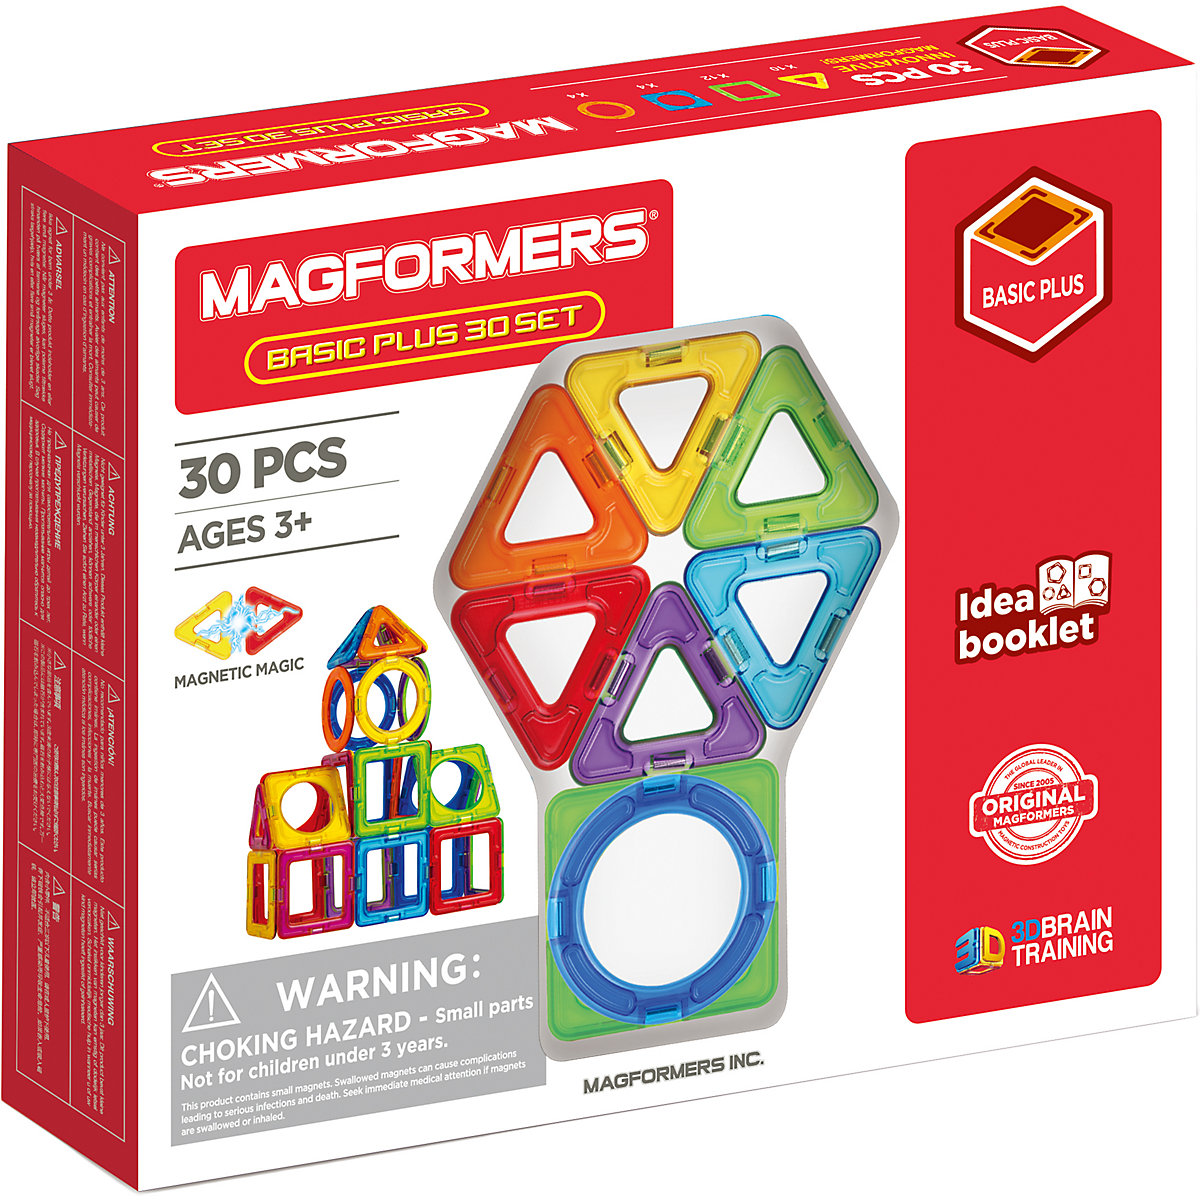 Magformers Basic Plus 30 Set